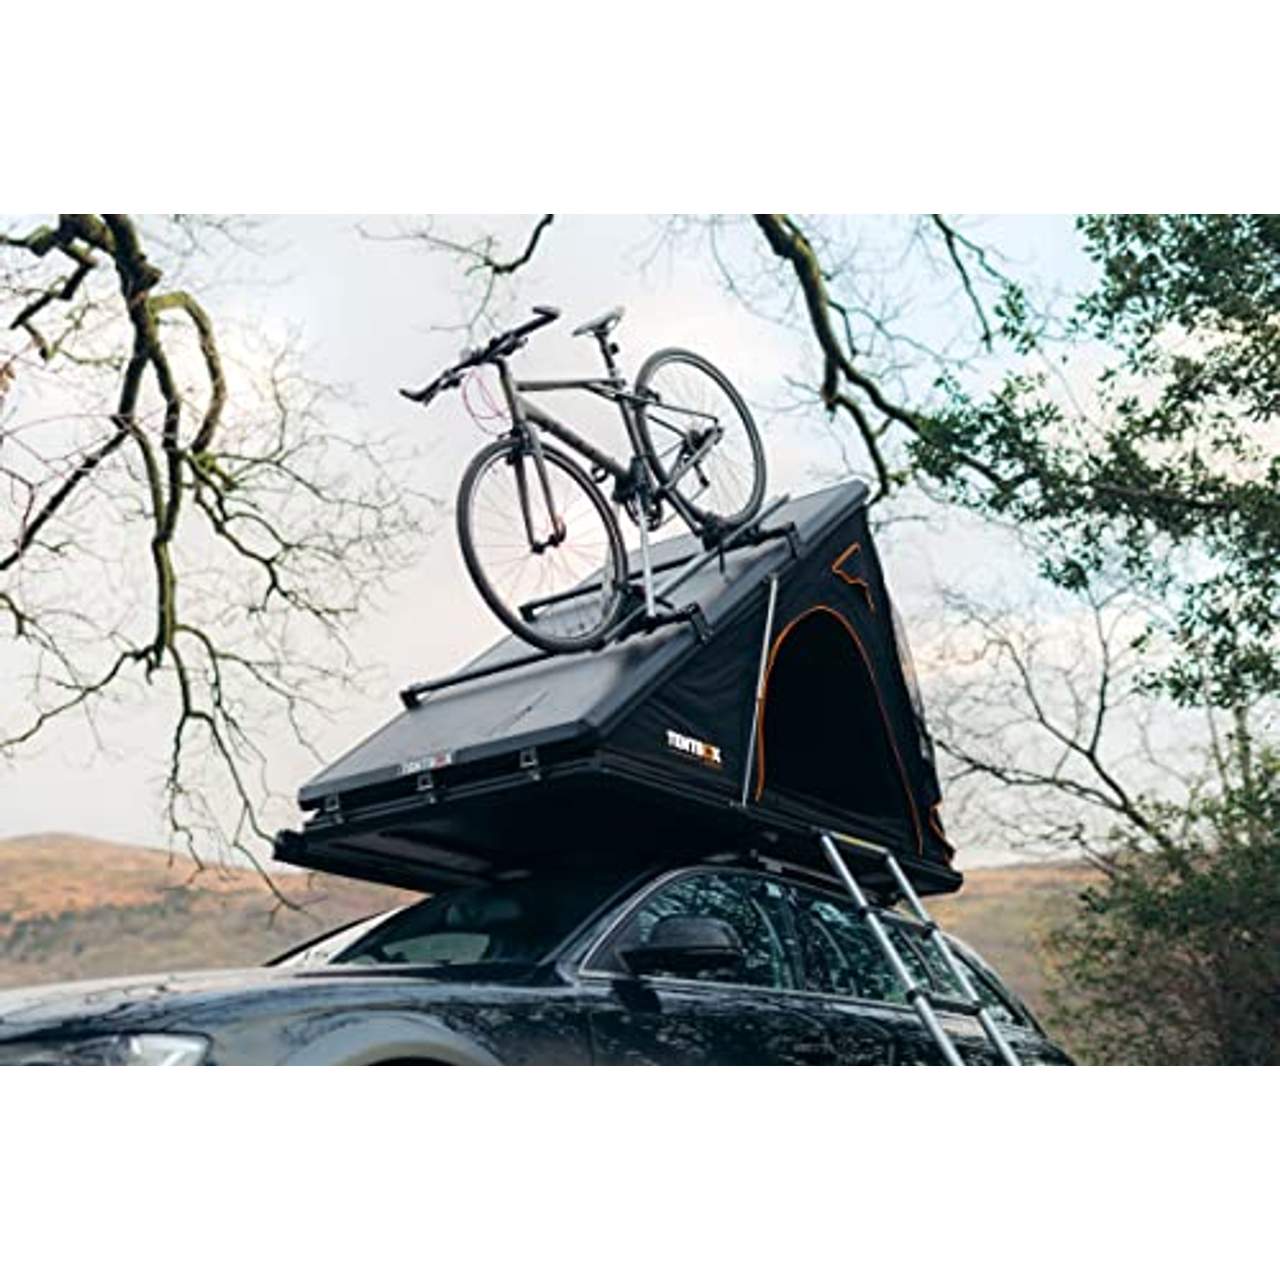 TentBox Cargo Autodachzelt für 2 Personen & alle Jahreszeiten geeignet